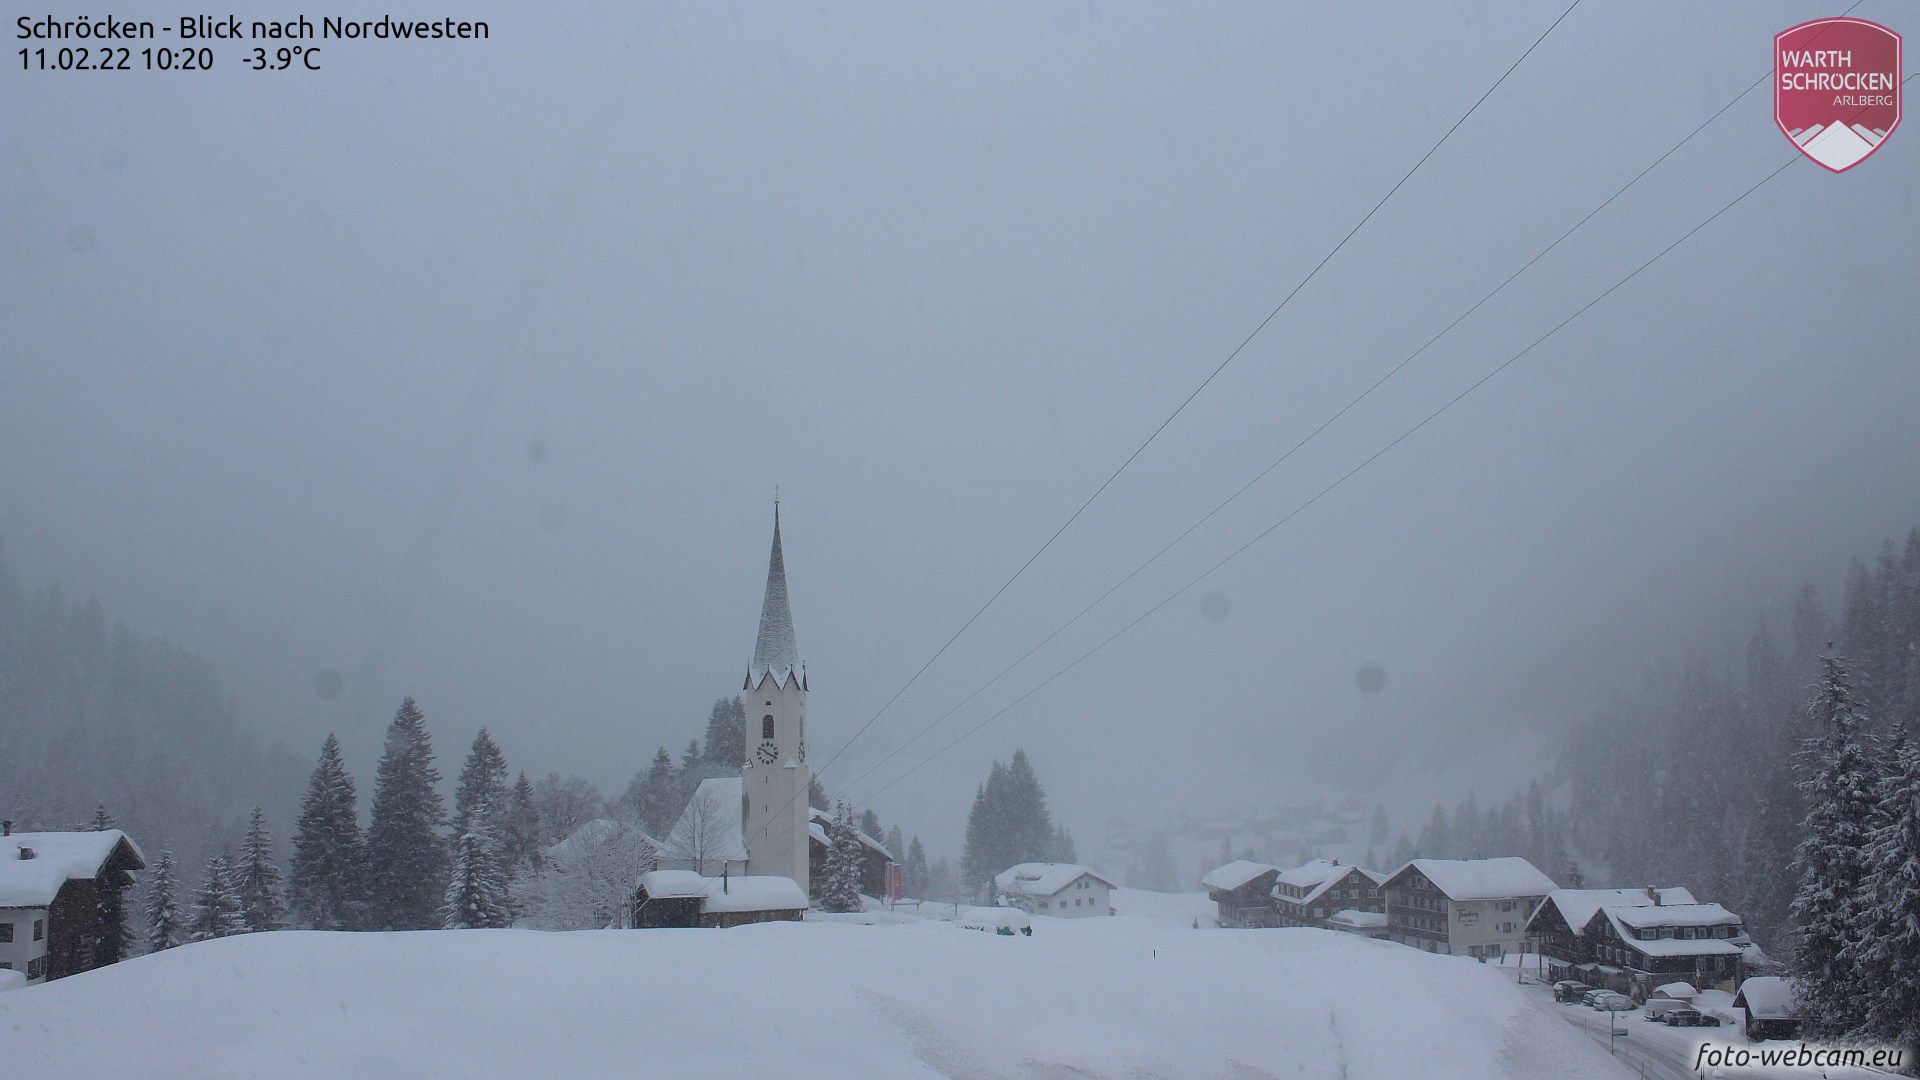 Wat verse sneeuw in Schröcken (foto-webcam.eu)